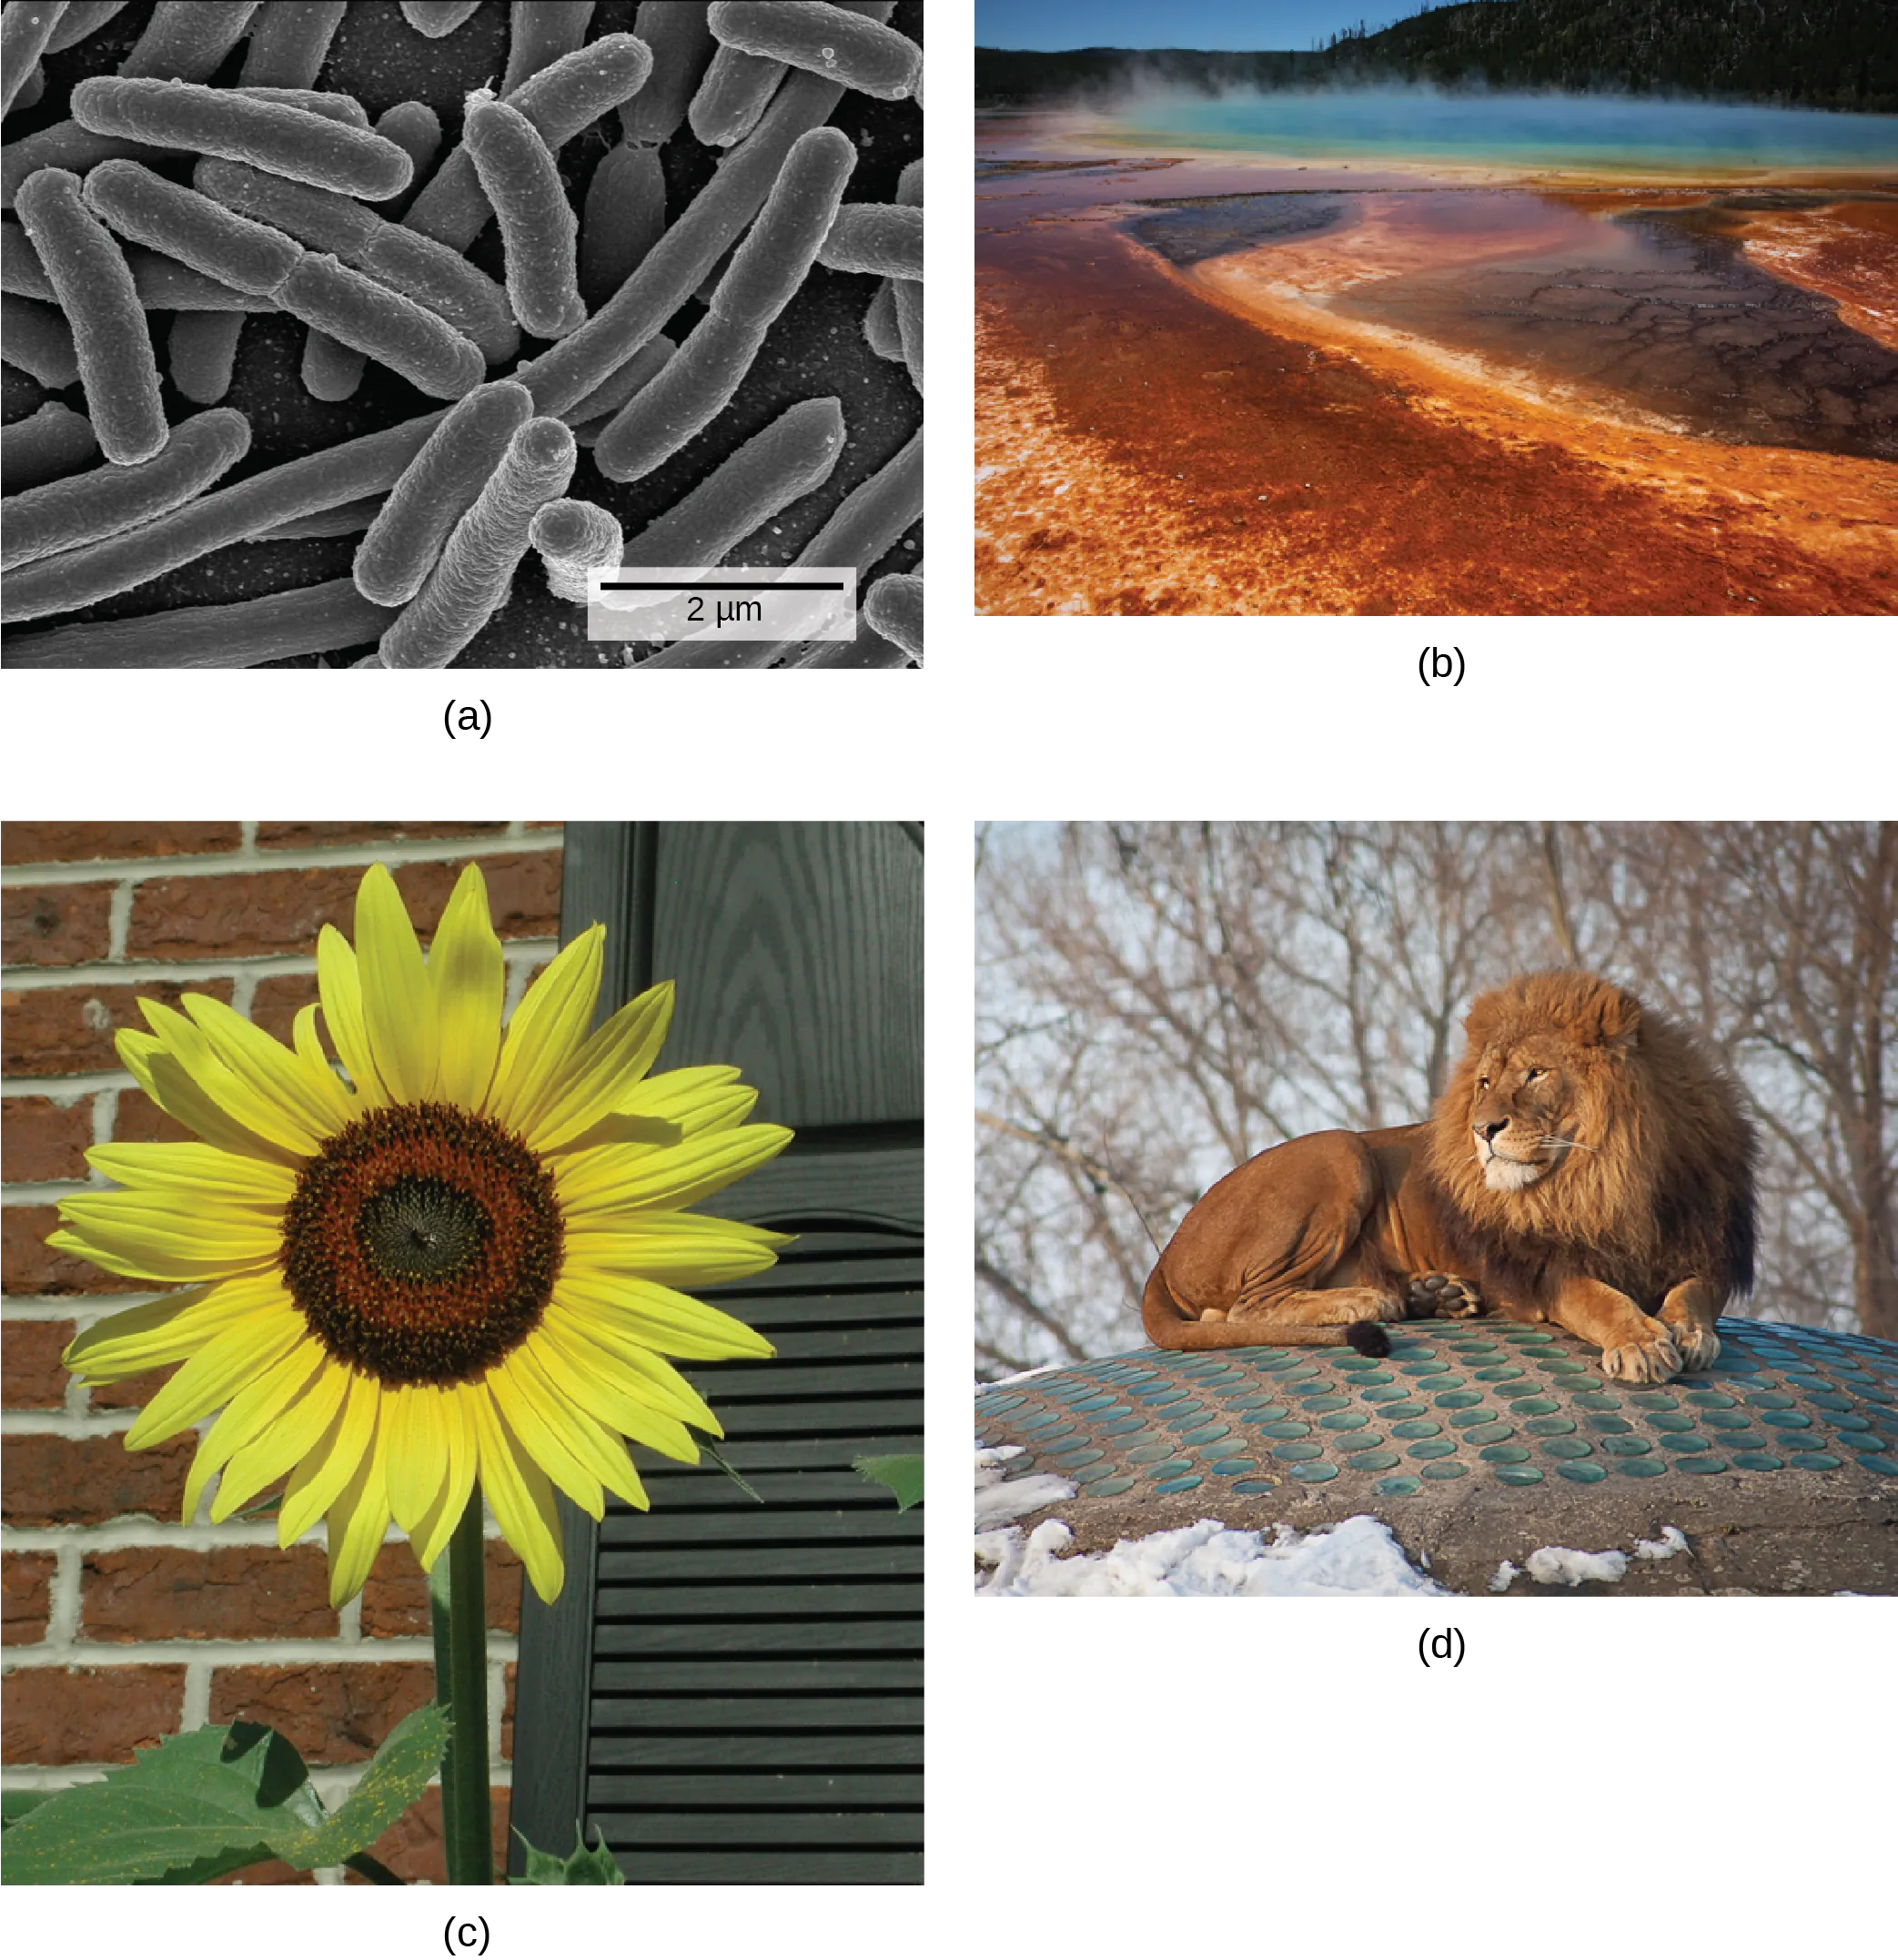 Photo depict: A: bacterial cells. Photo depict: B: a natural hot vent. Photo depict: C: a sunflower. Photo depict: D: a lion.